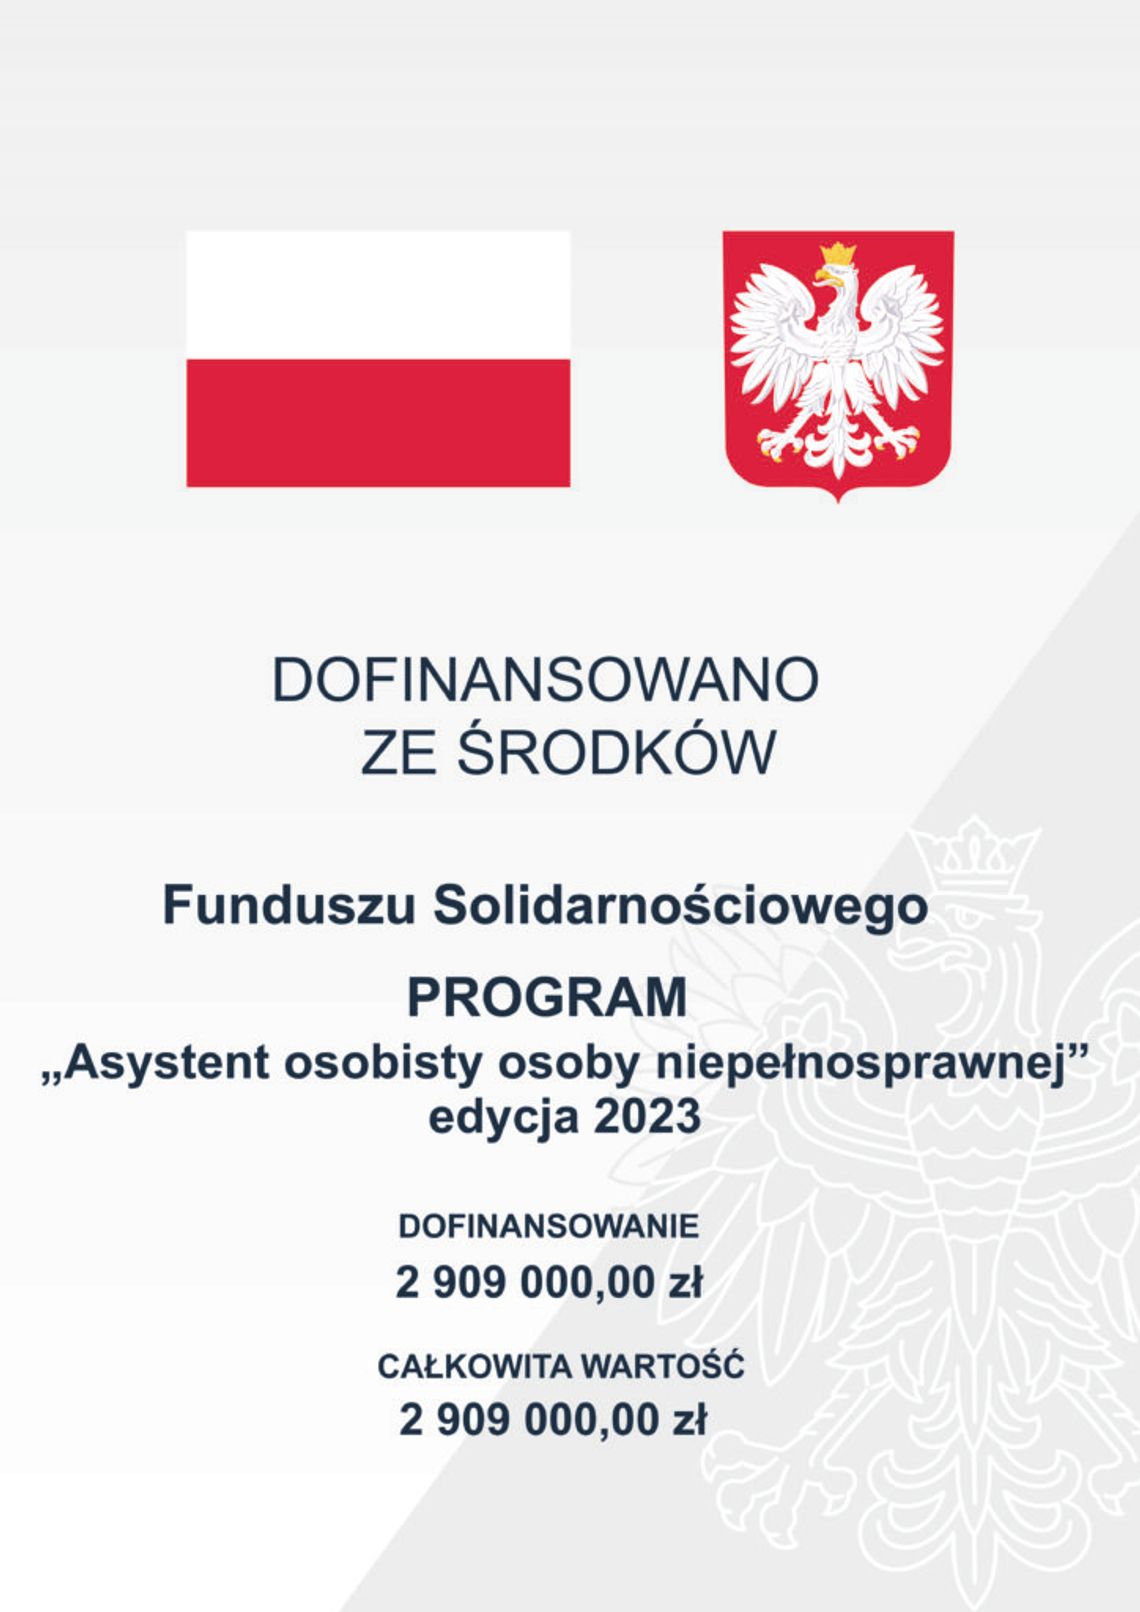 Polski Komitet Pomocy Społecznej rozpoczyna realizację zadań publicznych GMM